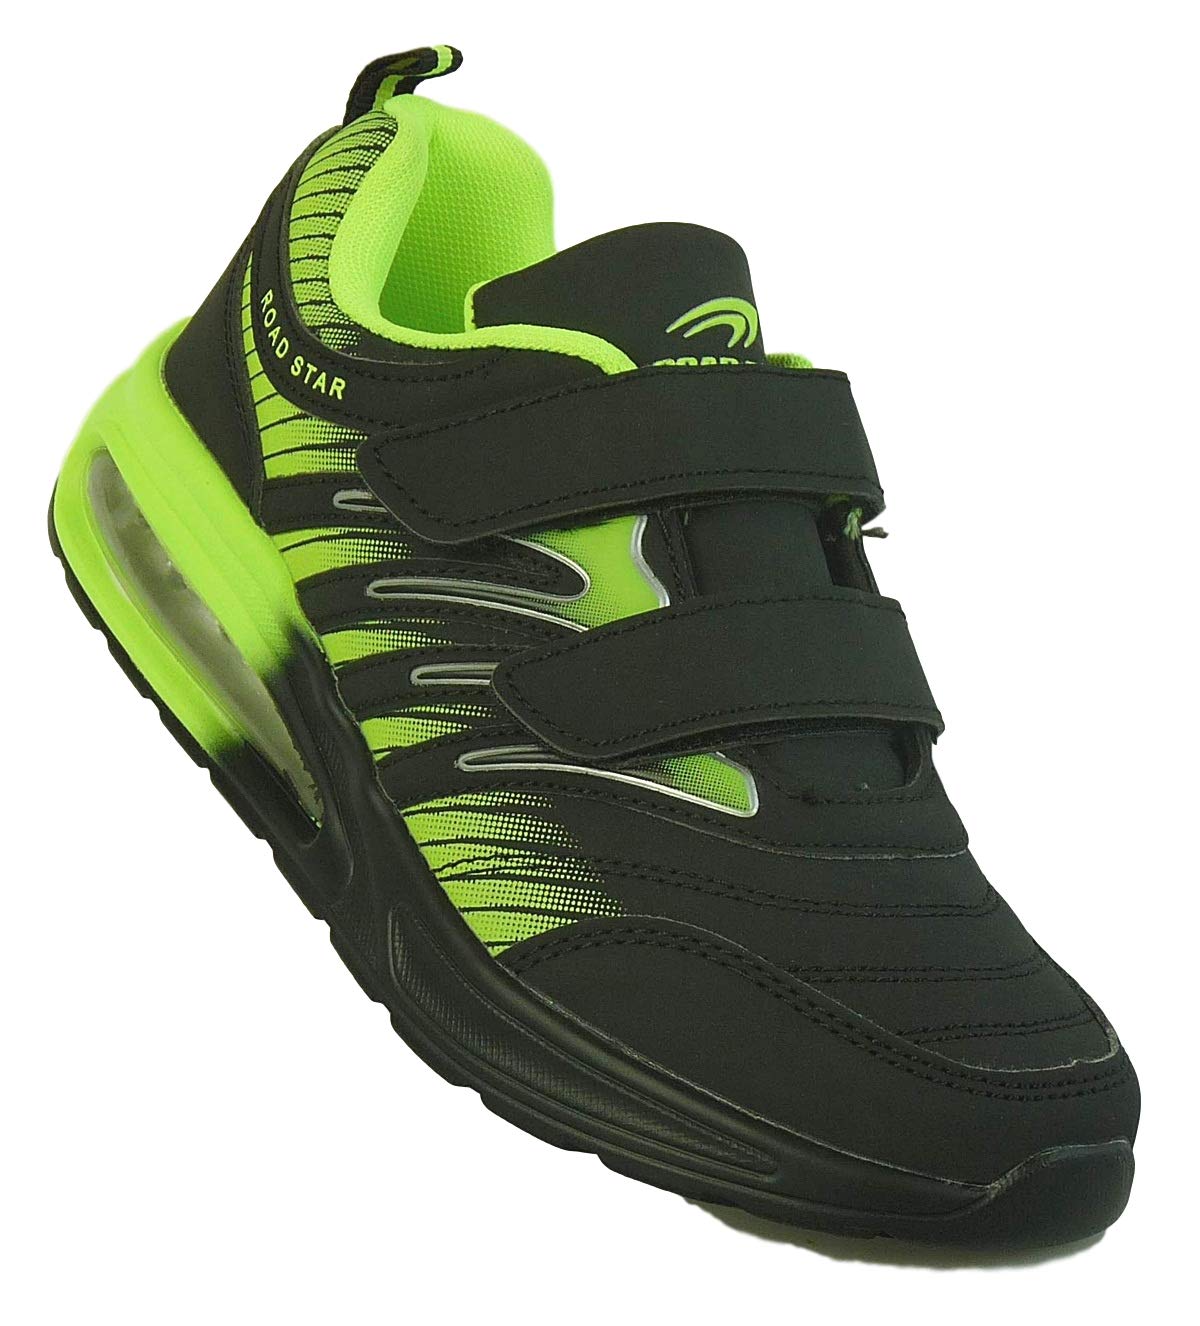 Bootsland Unisex Klett Sportschuhe Sneaker Turnschuhe Freizeitschuhe 001, Schuhgröße:38, Farbe:Schwarz/Grün